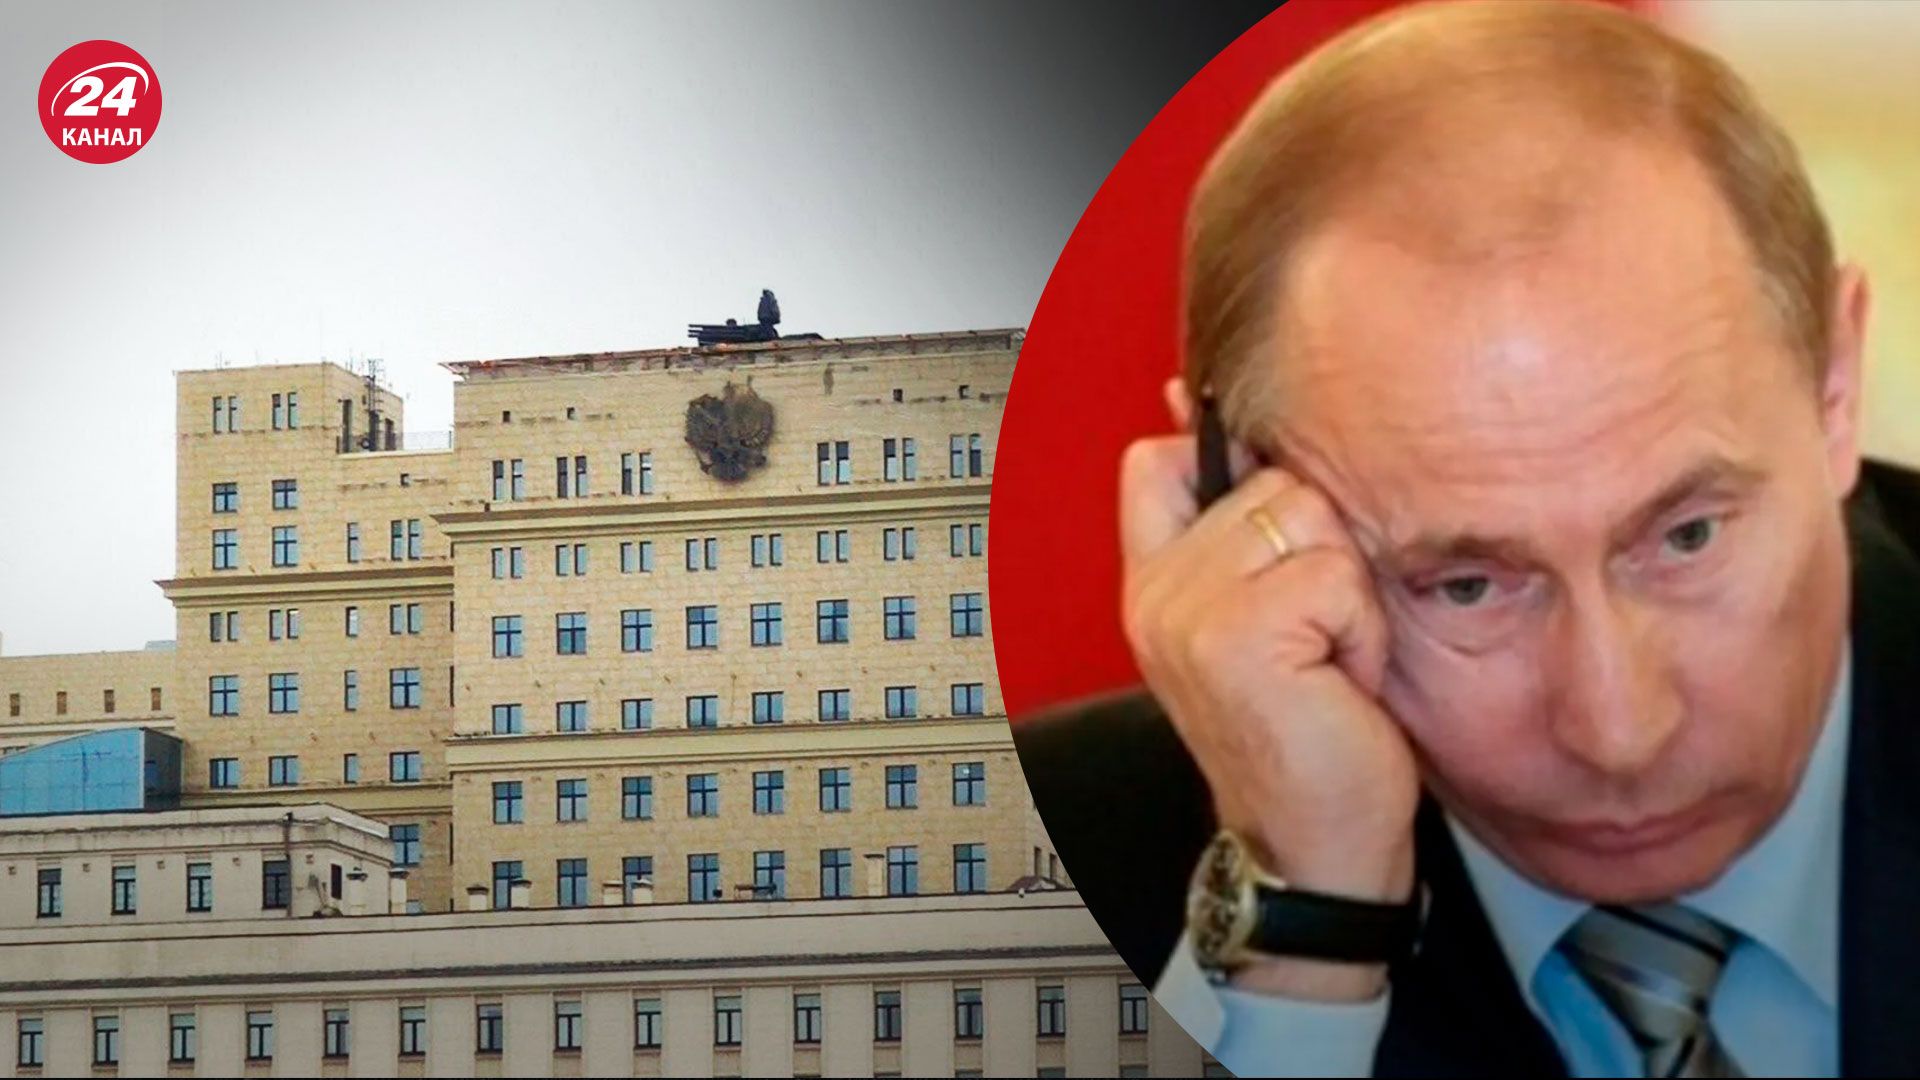 ПВО на зданиях в Москве - Кремль реально напуган - 24 Канал